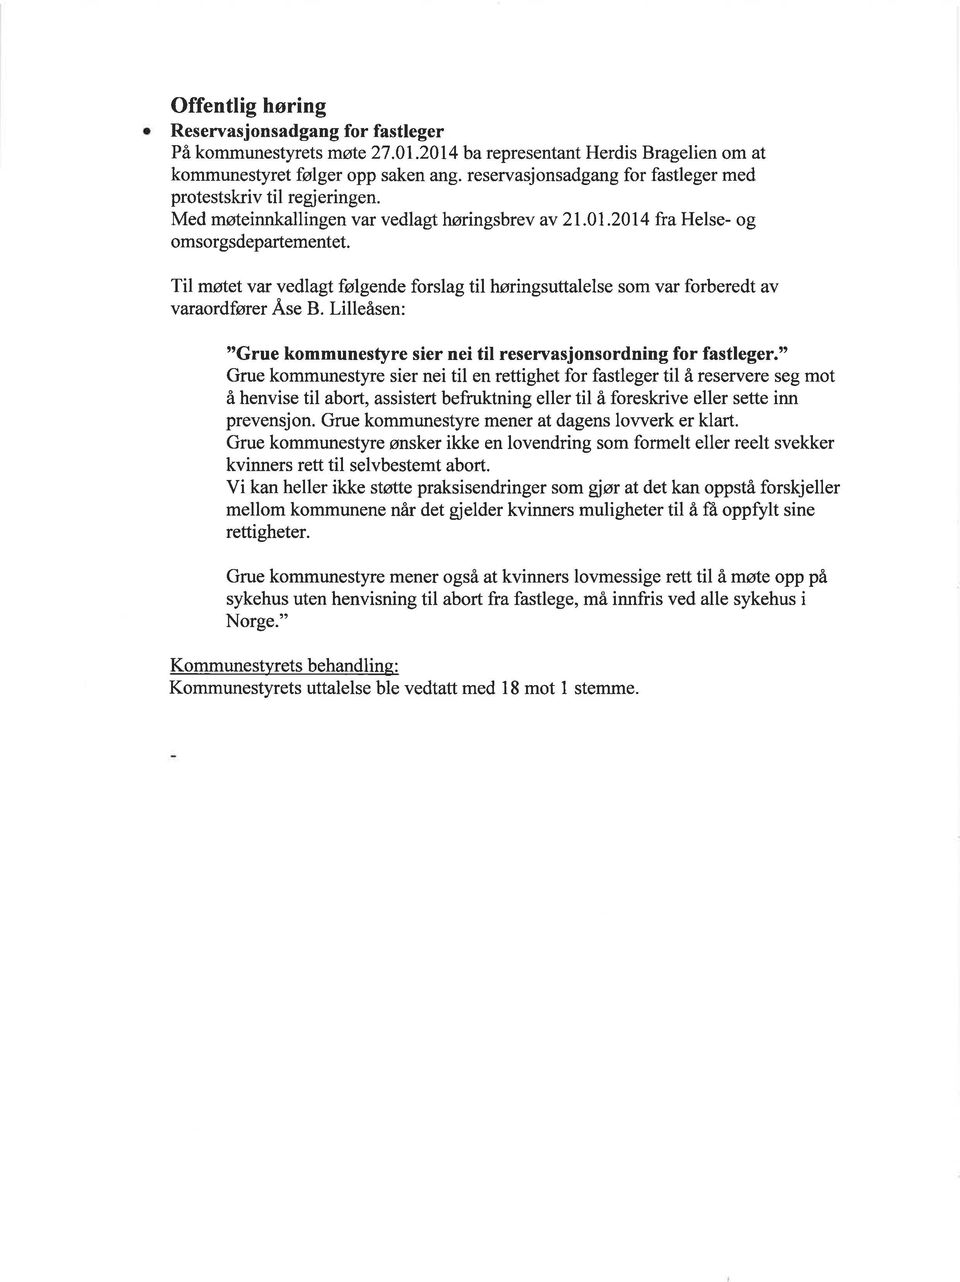 Til møtet var vedlagt følgende forslag til høringsuttalelse som var forberedt av varaordfører Äse B. Lilleåsen: "Grue kommunestyre sier nei til reservasjonsordning for fastleger.